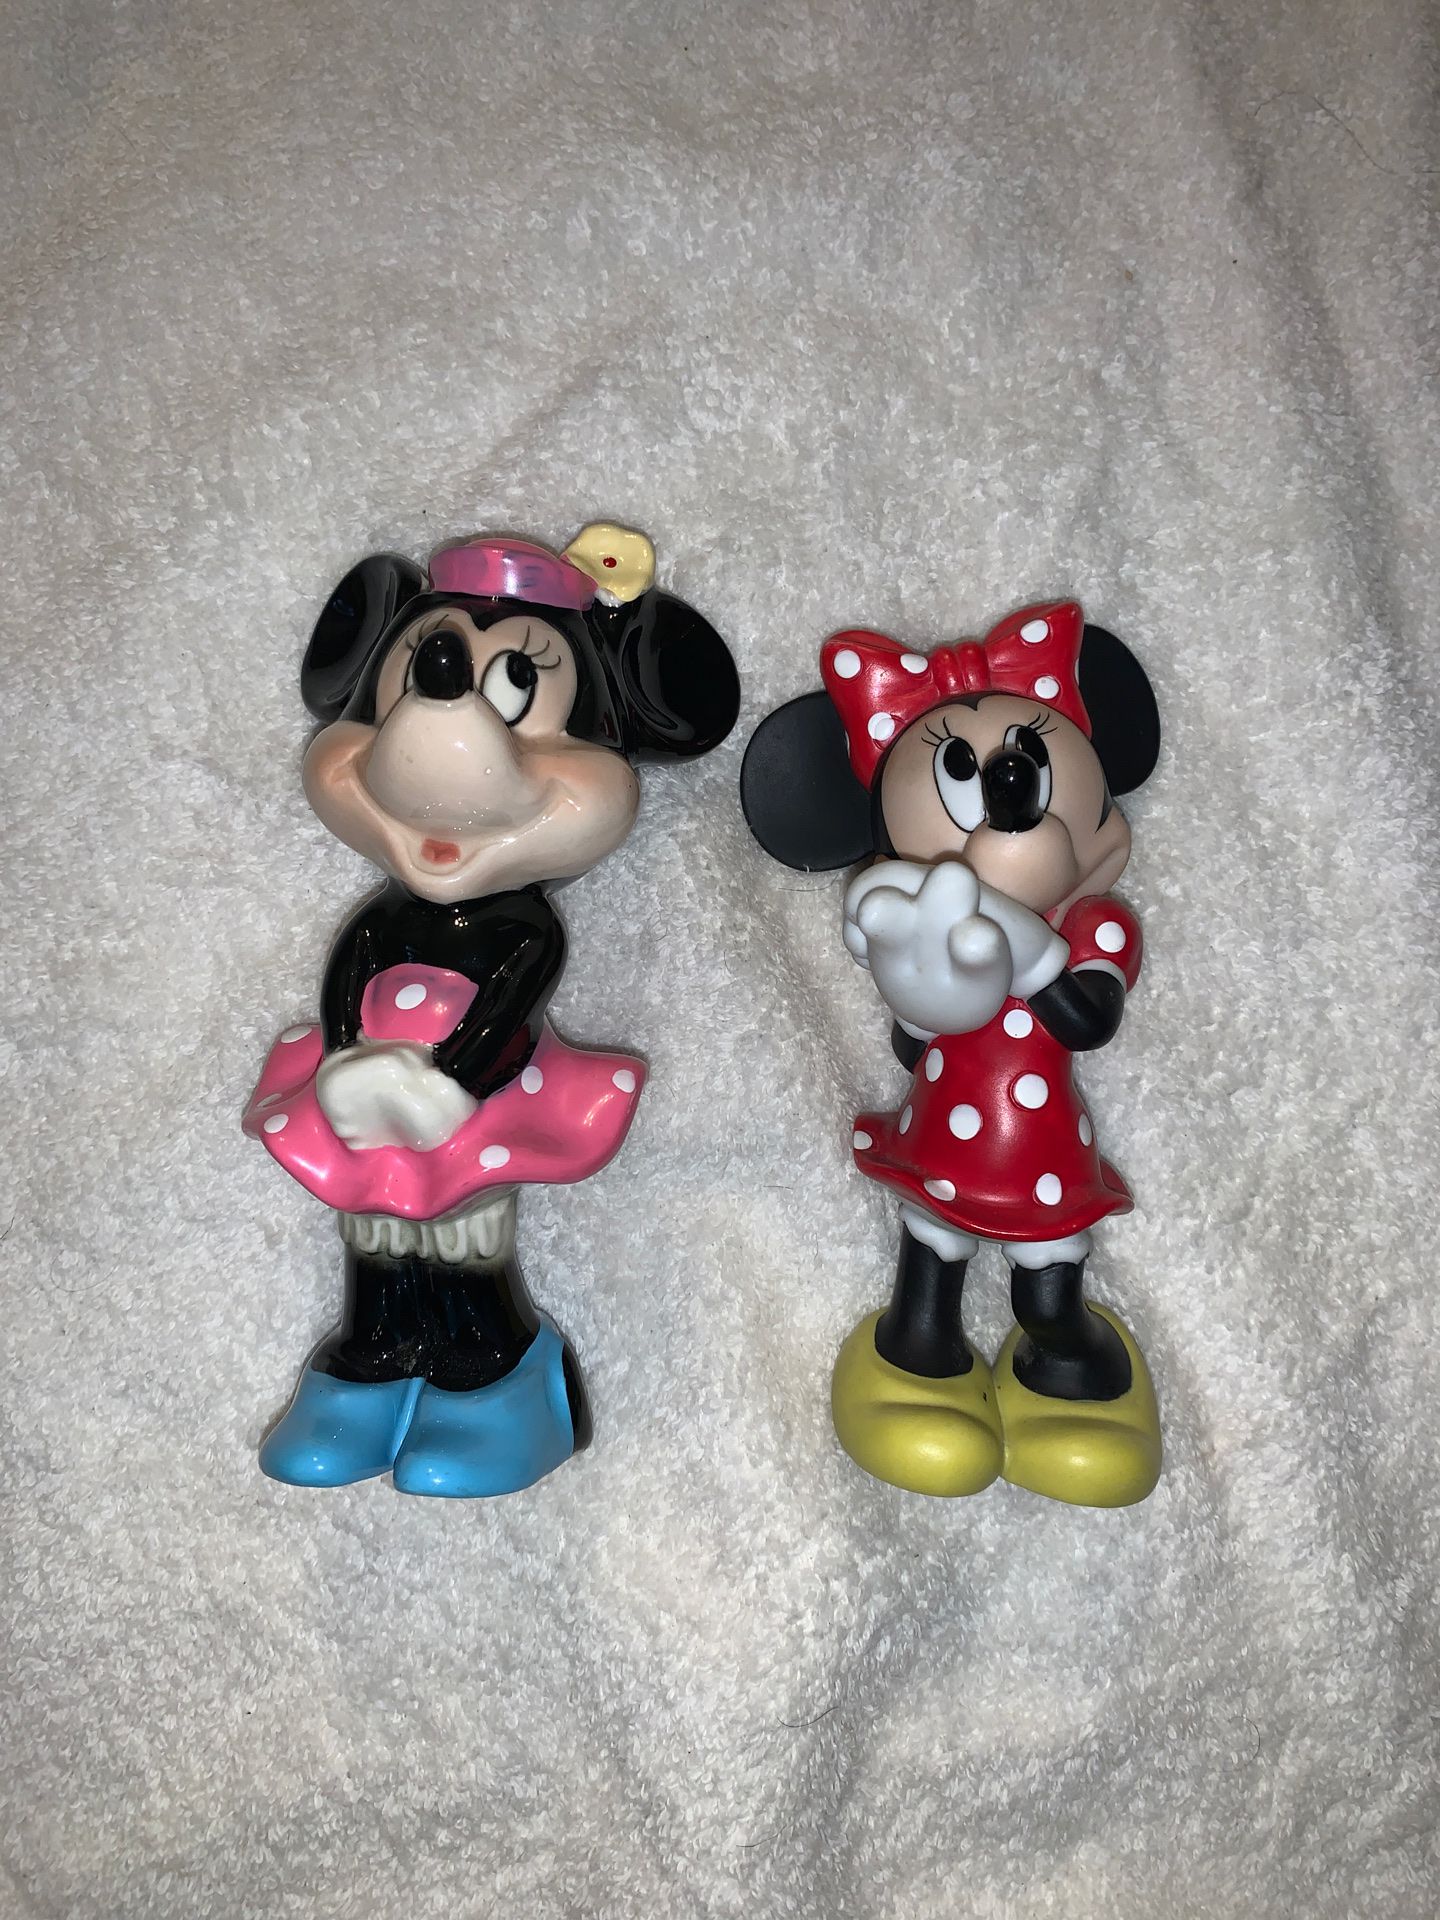 2 Vintage Disney Ceramic / Porcelain Minnie Mouse